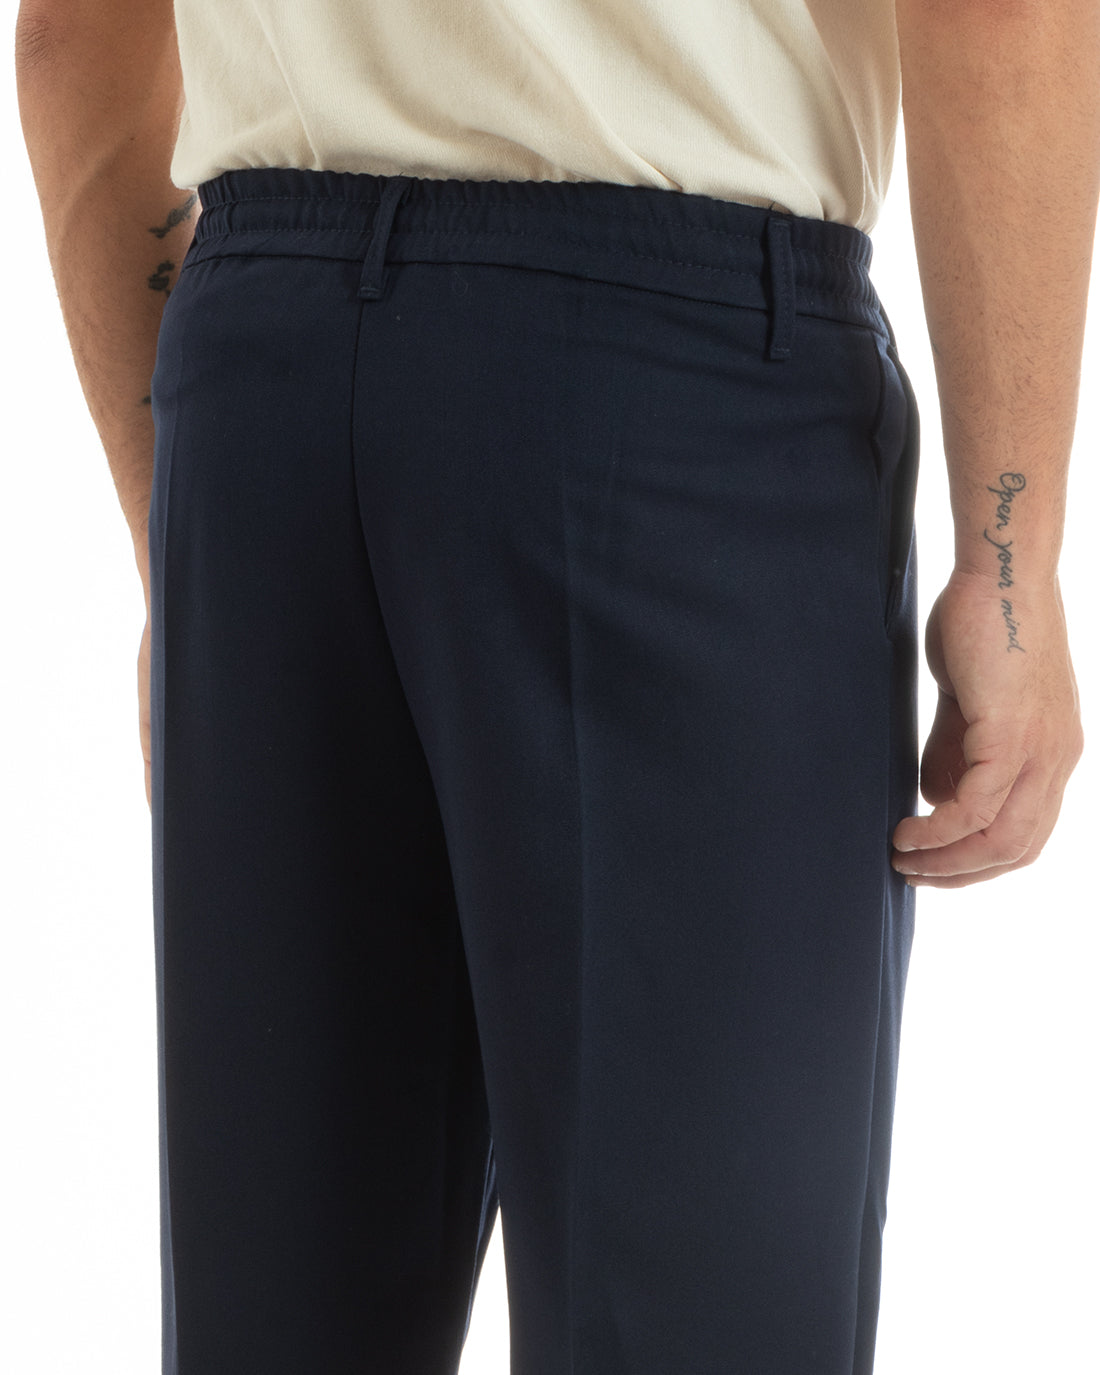 Pantaloni Uomo Baggy Lungo Fondo Largo Elastico Sul Retro Abbottonatura Allungata Blu Casual Elegante GIOSAL-P5916A